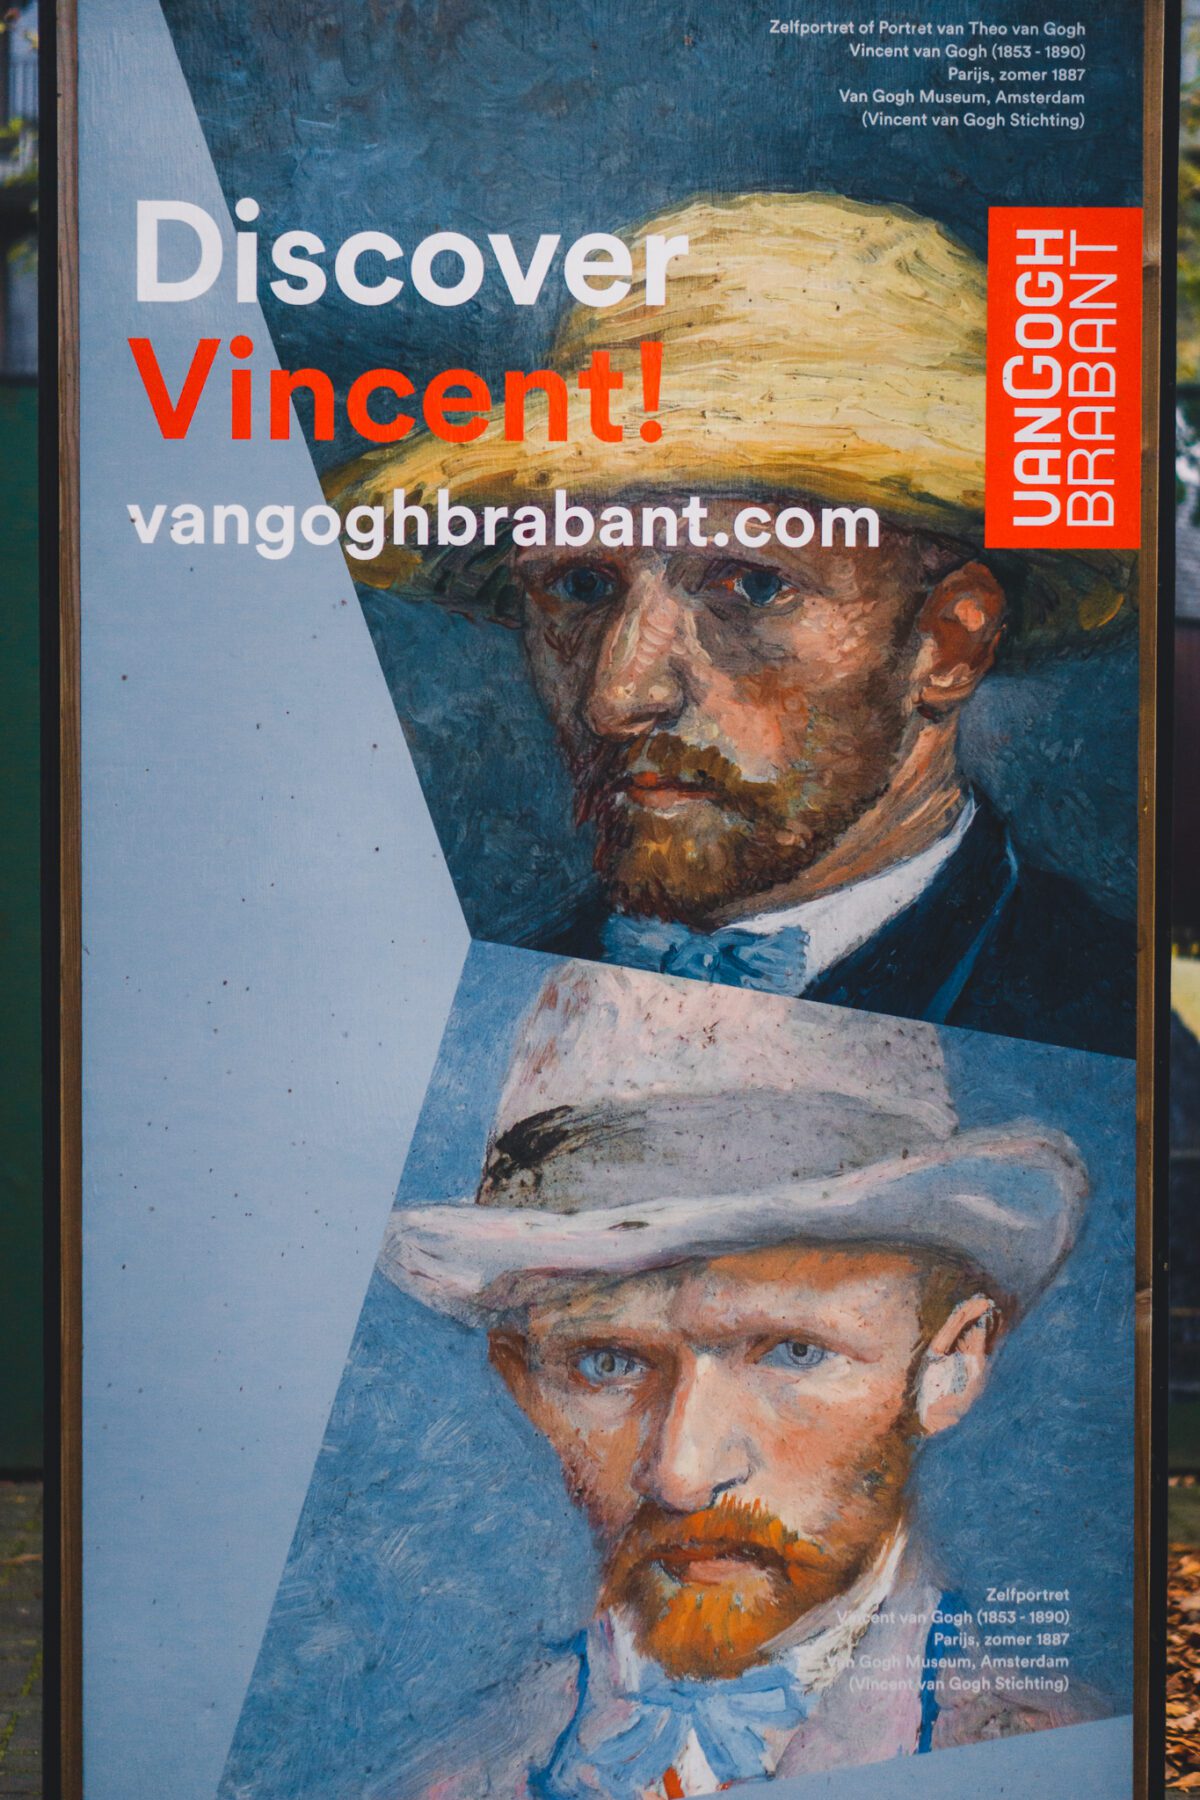 Van Gogh wandeling Nuenen